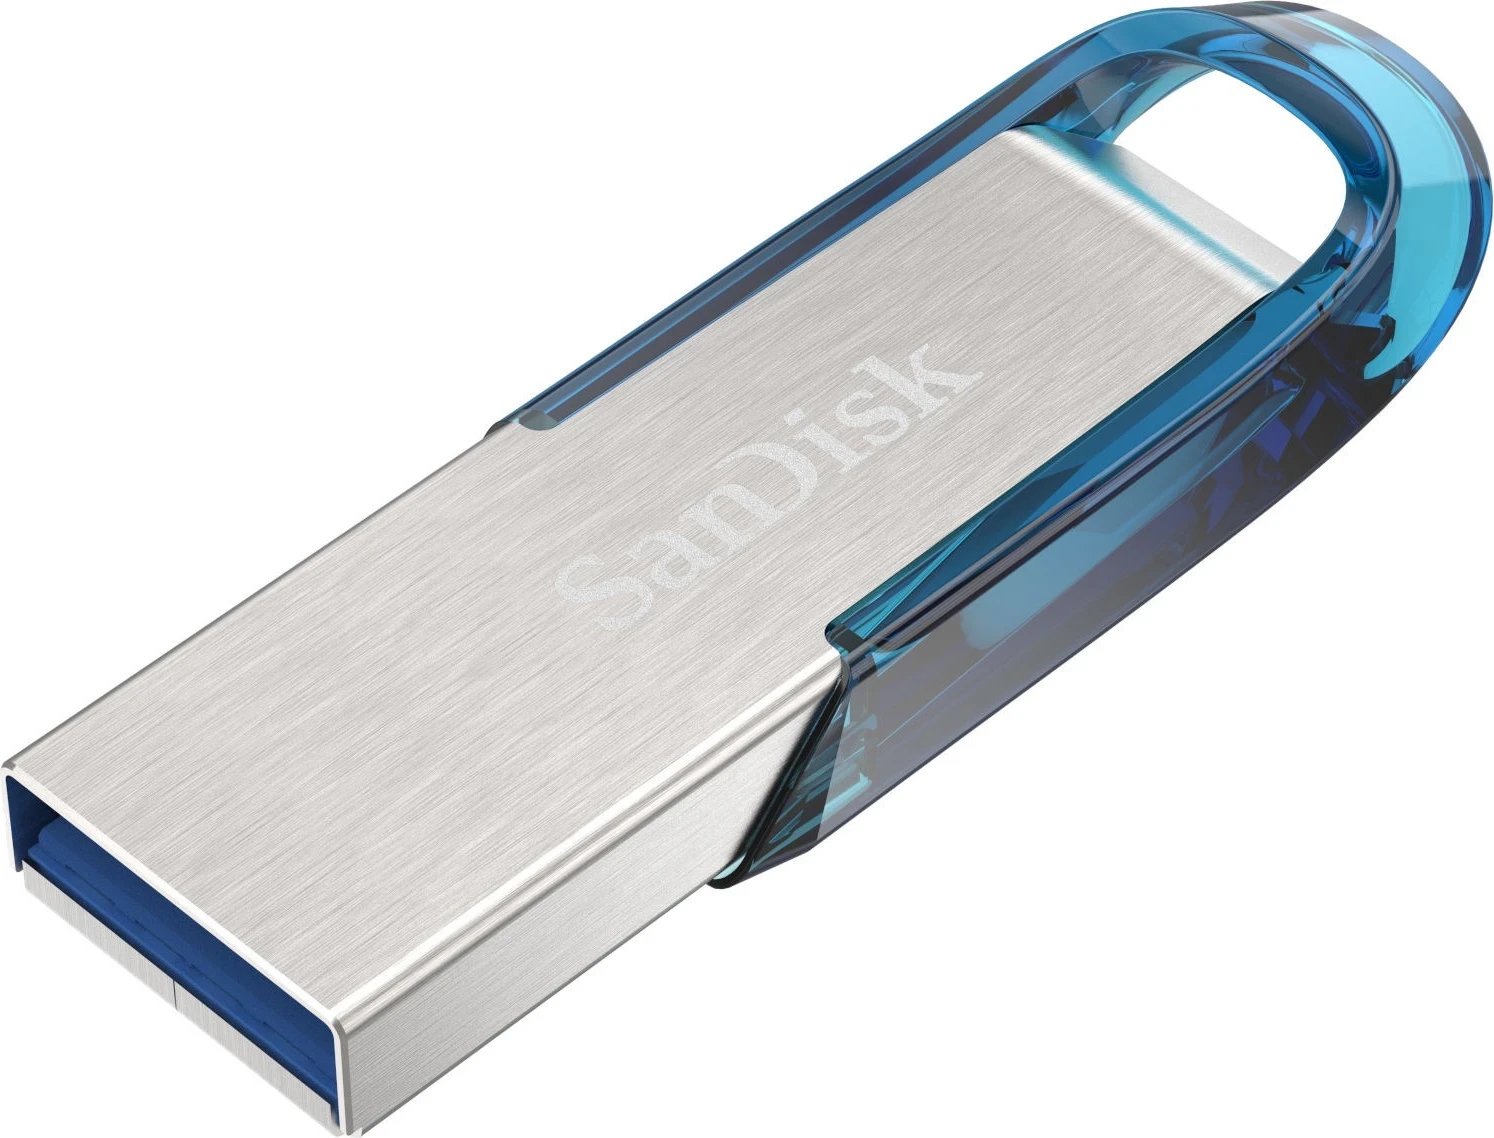 USB SanDisk Ultra Flair, 64GB, USB 3.0, 150 MB/s, argjend/ e kaltër